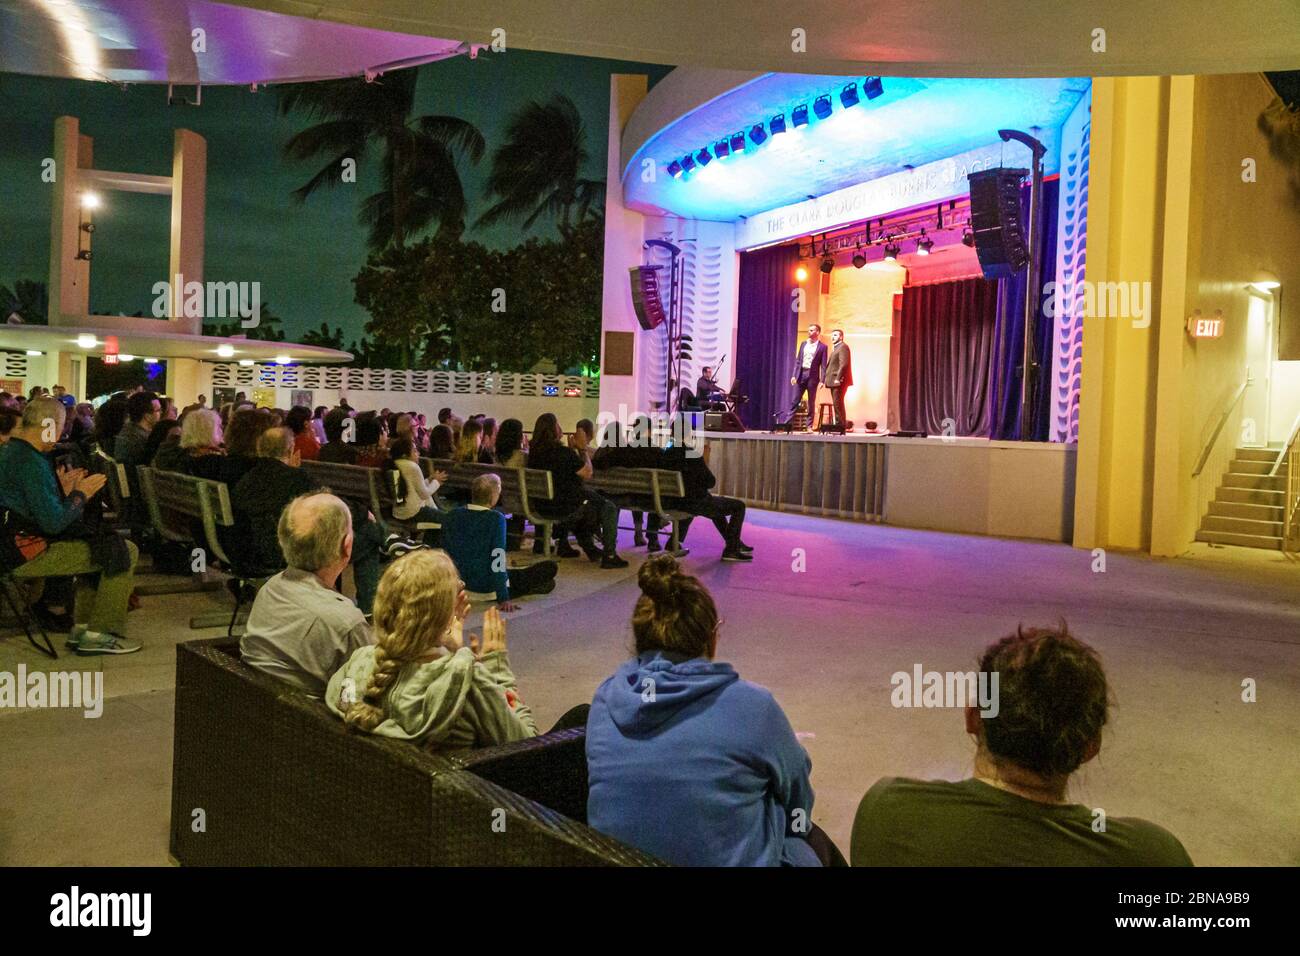 Miami Beach Florida, North Beach Band Shell audience, nuit nocturne après la nuit, spectacle d'opéra gratuit, scène, chanteur interprète, Banque D'Images